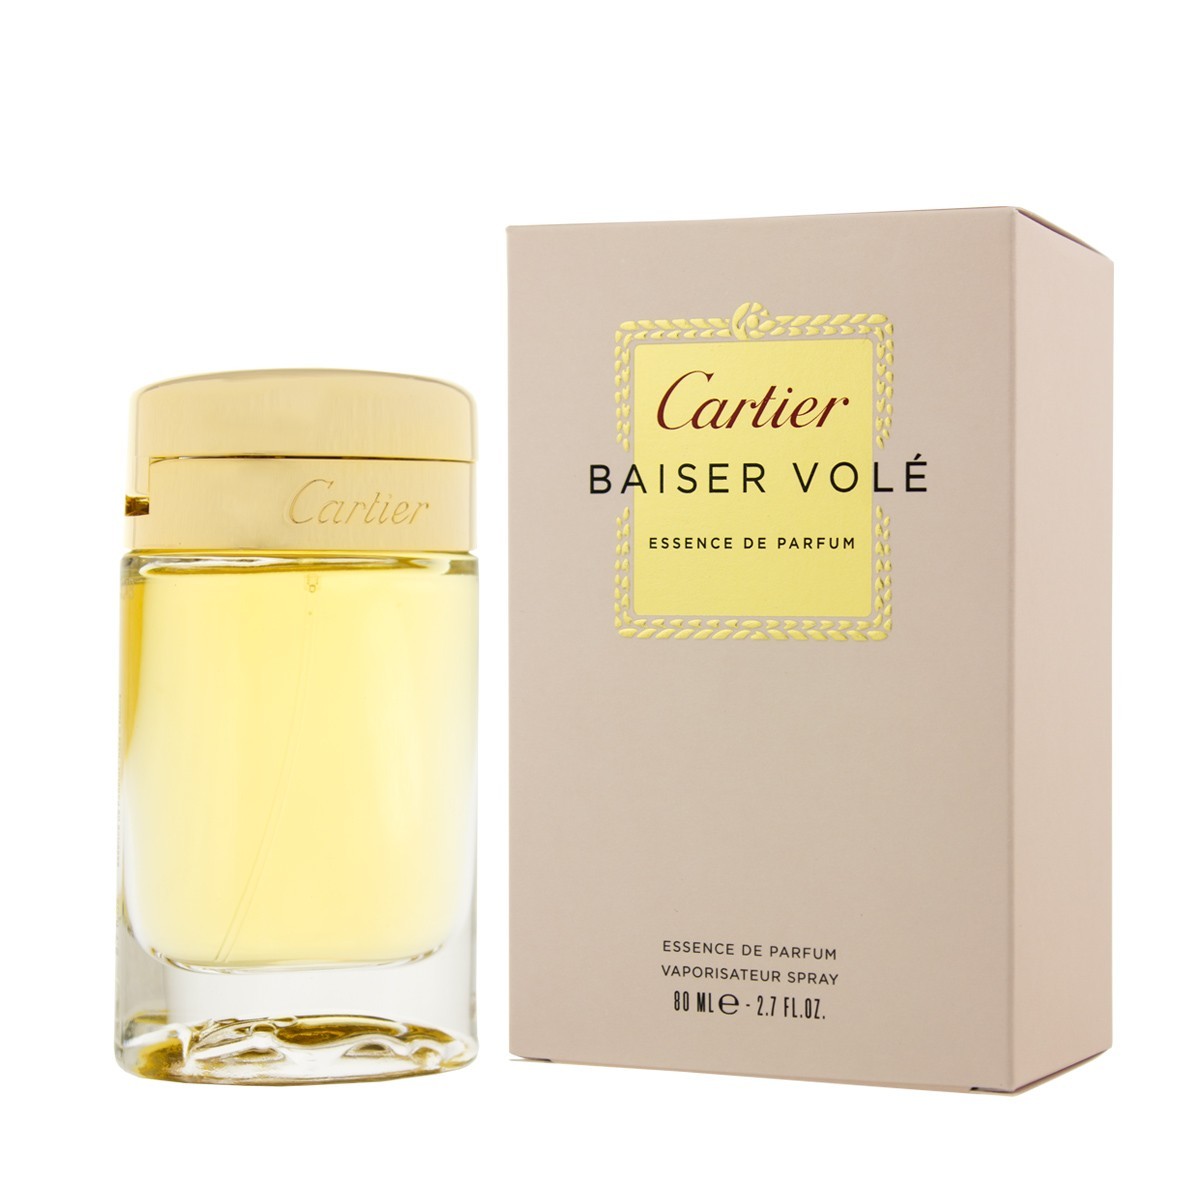 Изображение парфюма Cartier Baiser Vole Essence de Parfum